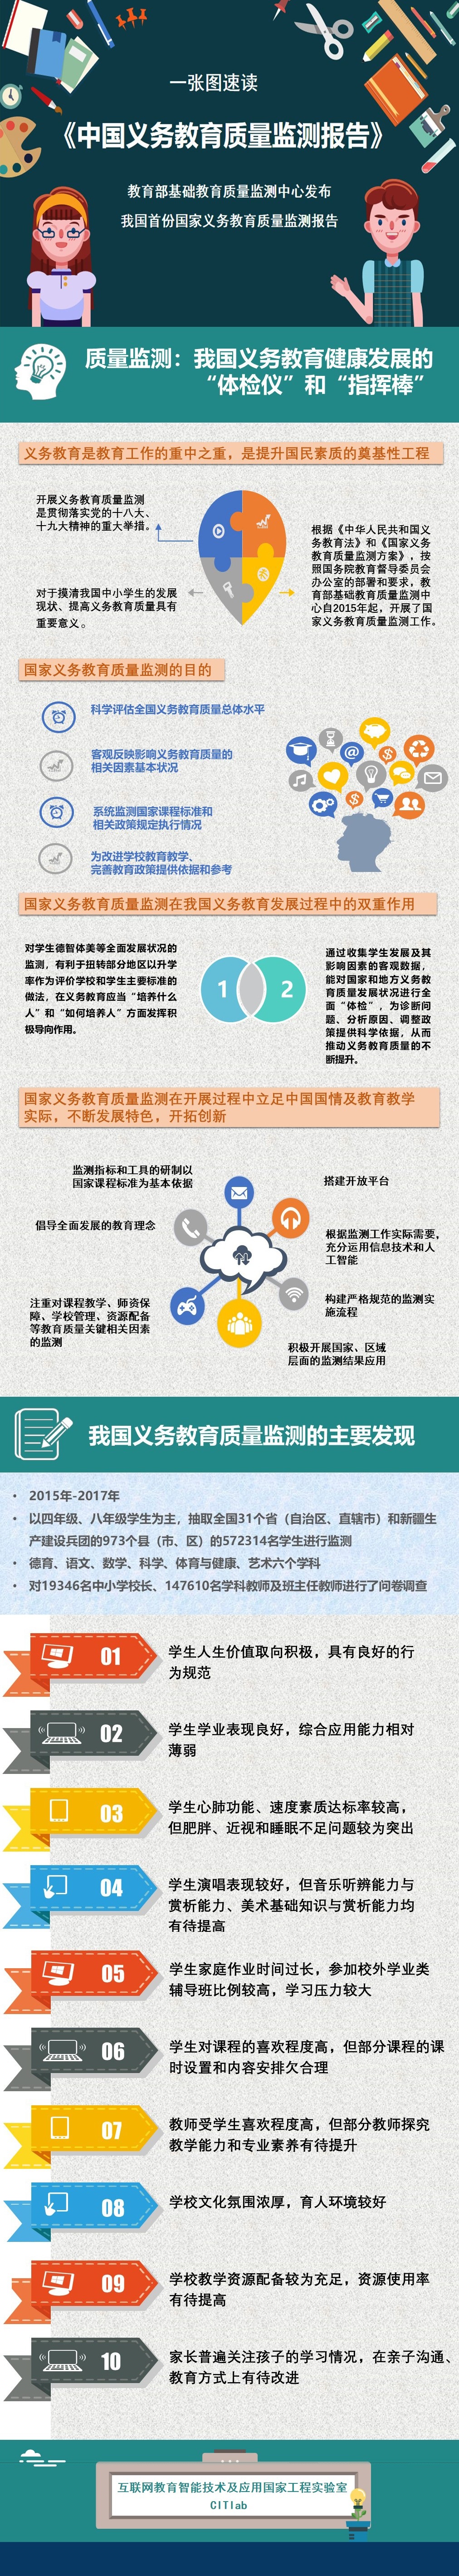 一图带你迅速了解《中国义务教育质量监测报告》的核心内